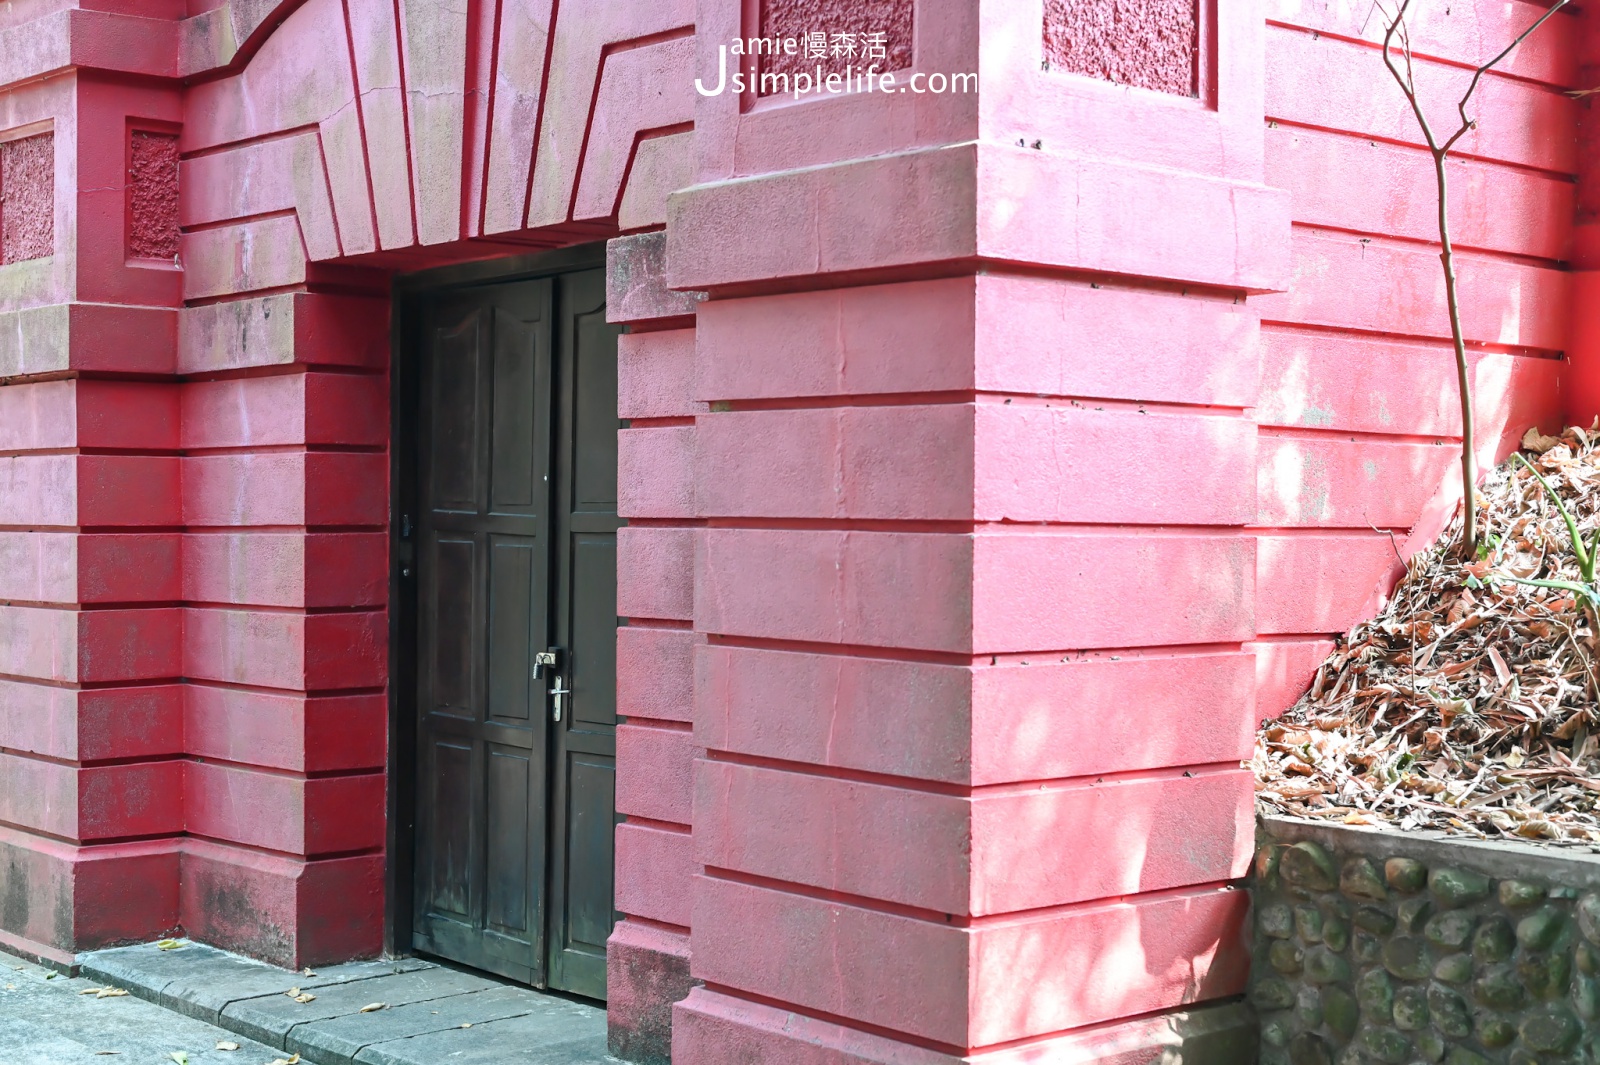 台北公館 自來水博物館「觀音山蓄水池」 建築外觀